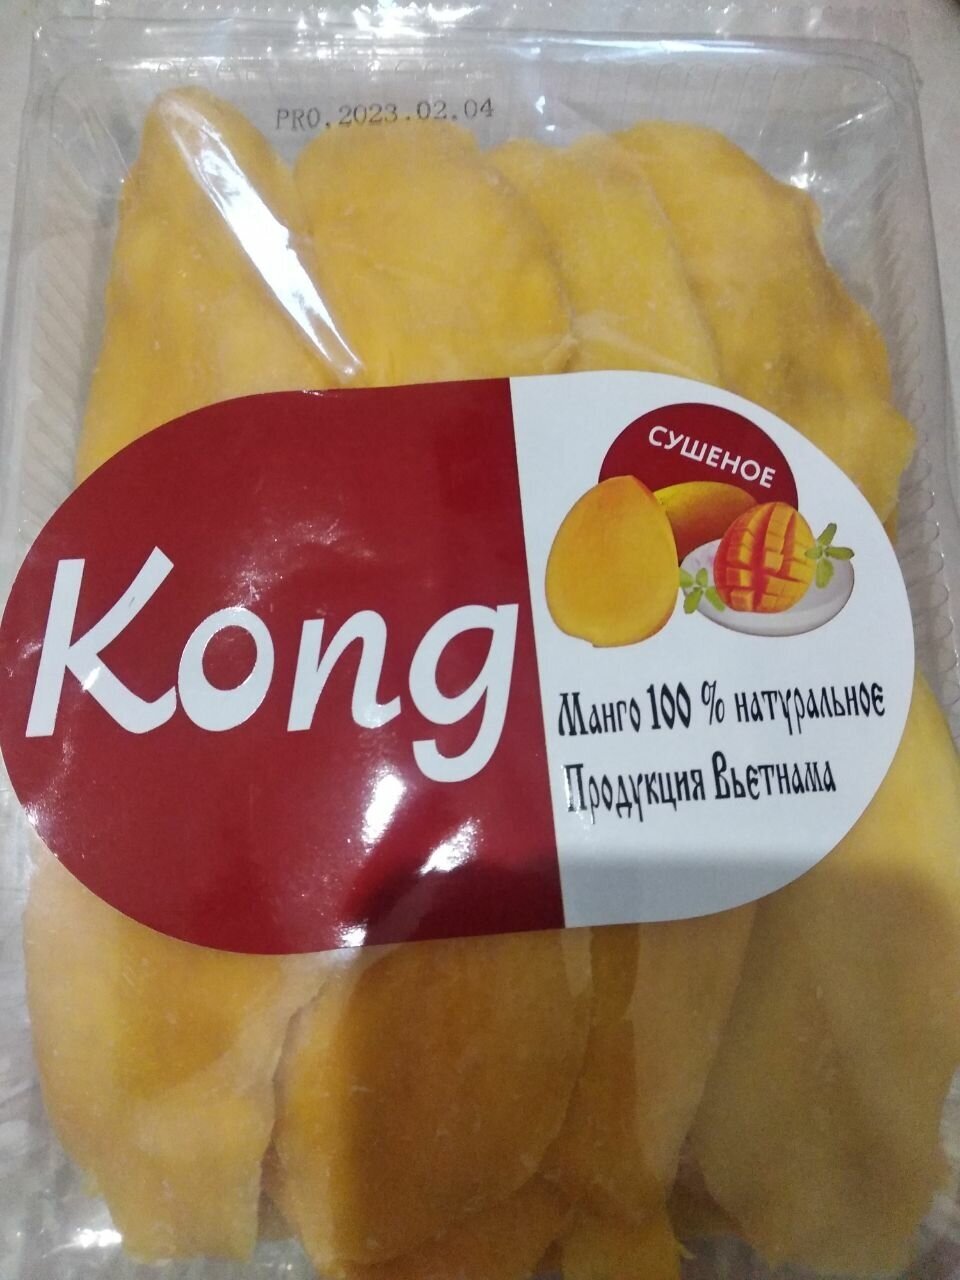 (1 кг) Манго сушеное KONG/1000гр. /Натуральное Вьетнамское